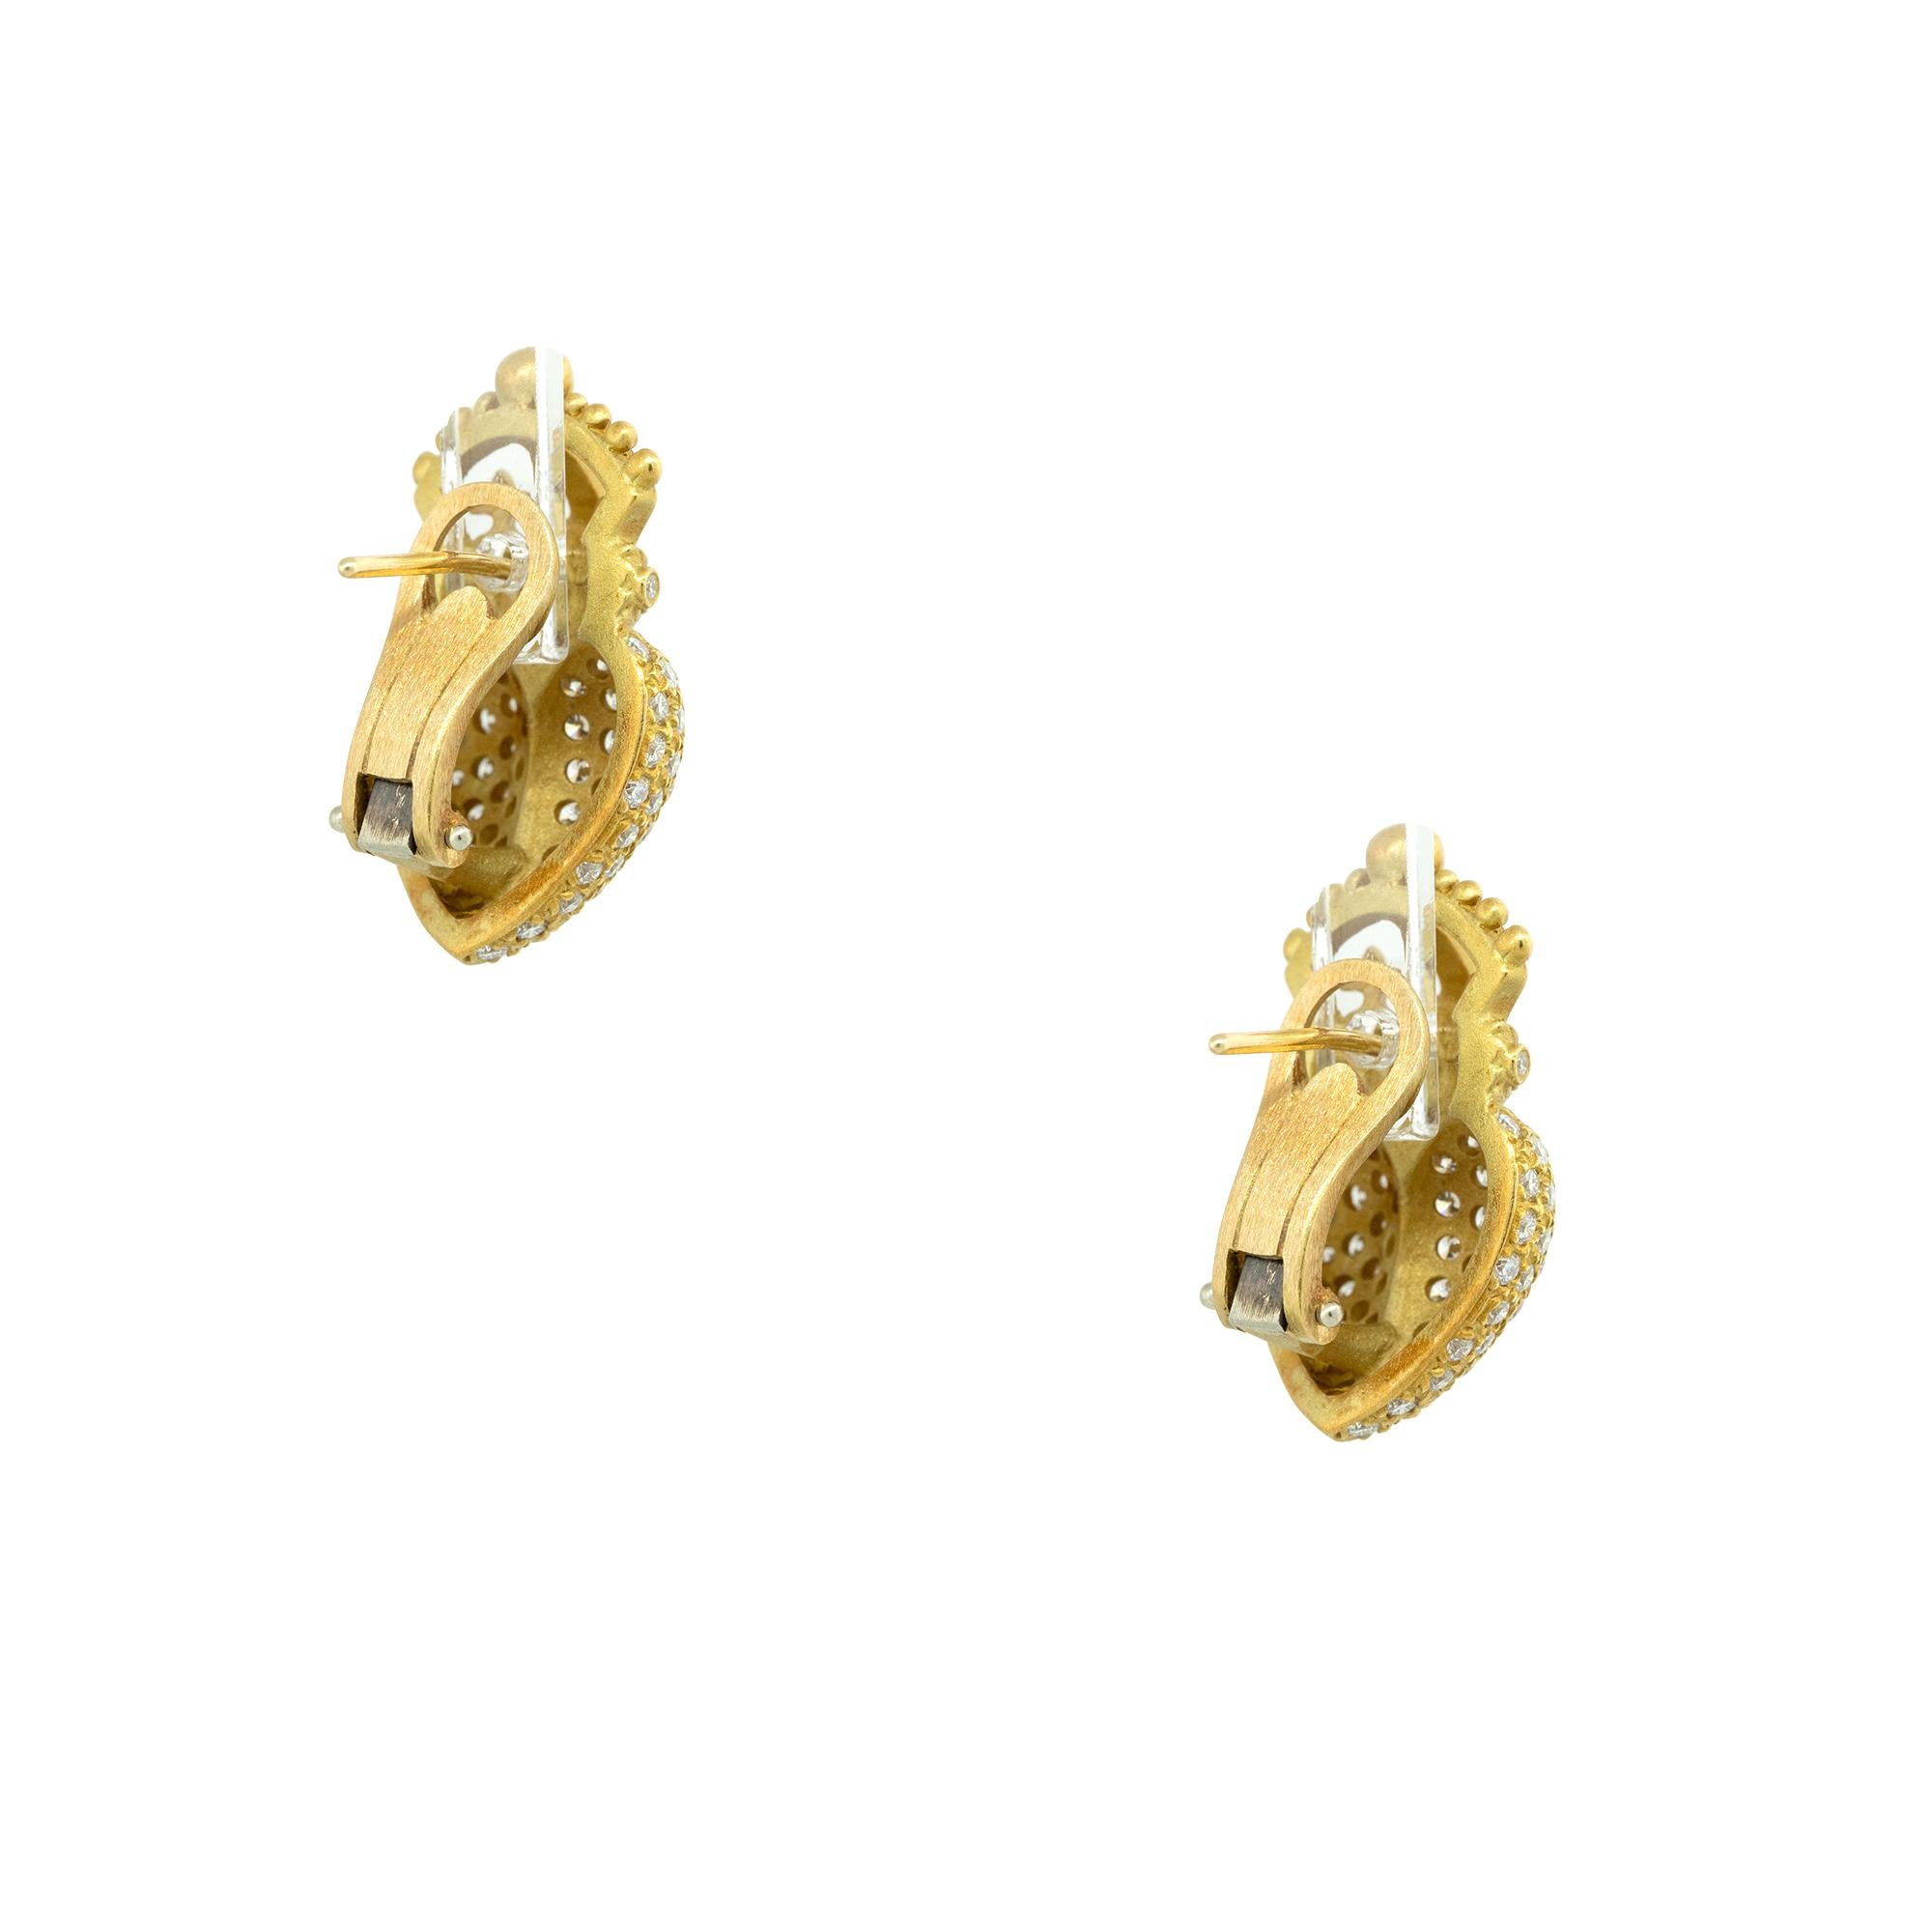 Modern Barry Kieselstein 2 carat Pave Diamond Crown Heart Earrings 18 Karat In Stock For Sale